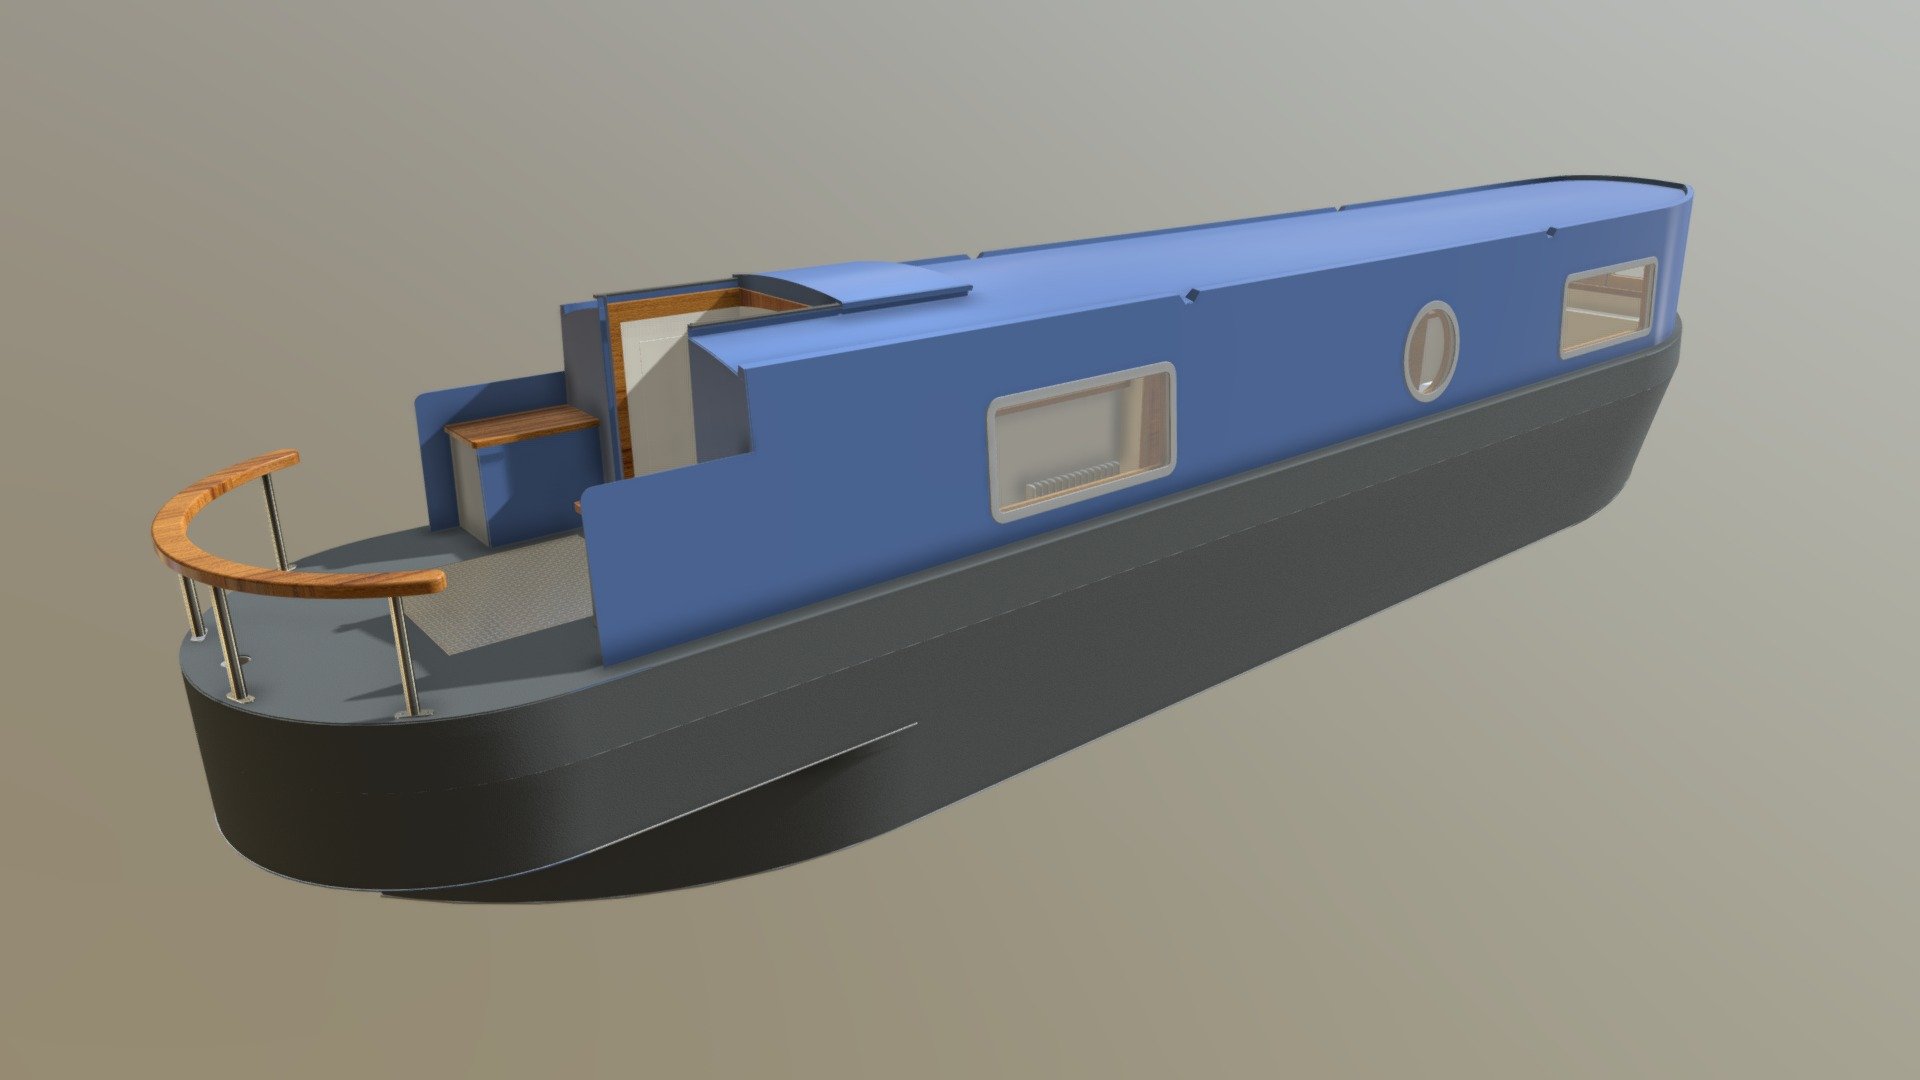 Aqueduct Narrowboat 16-9-19 - 3D model by stuartnorton 3d model